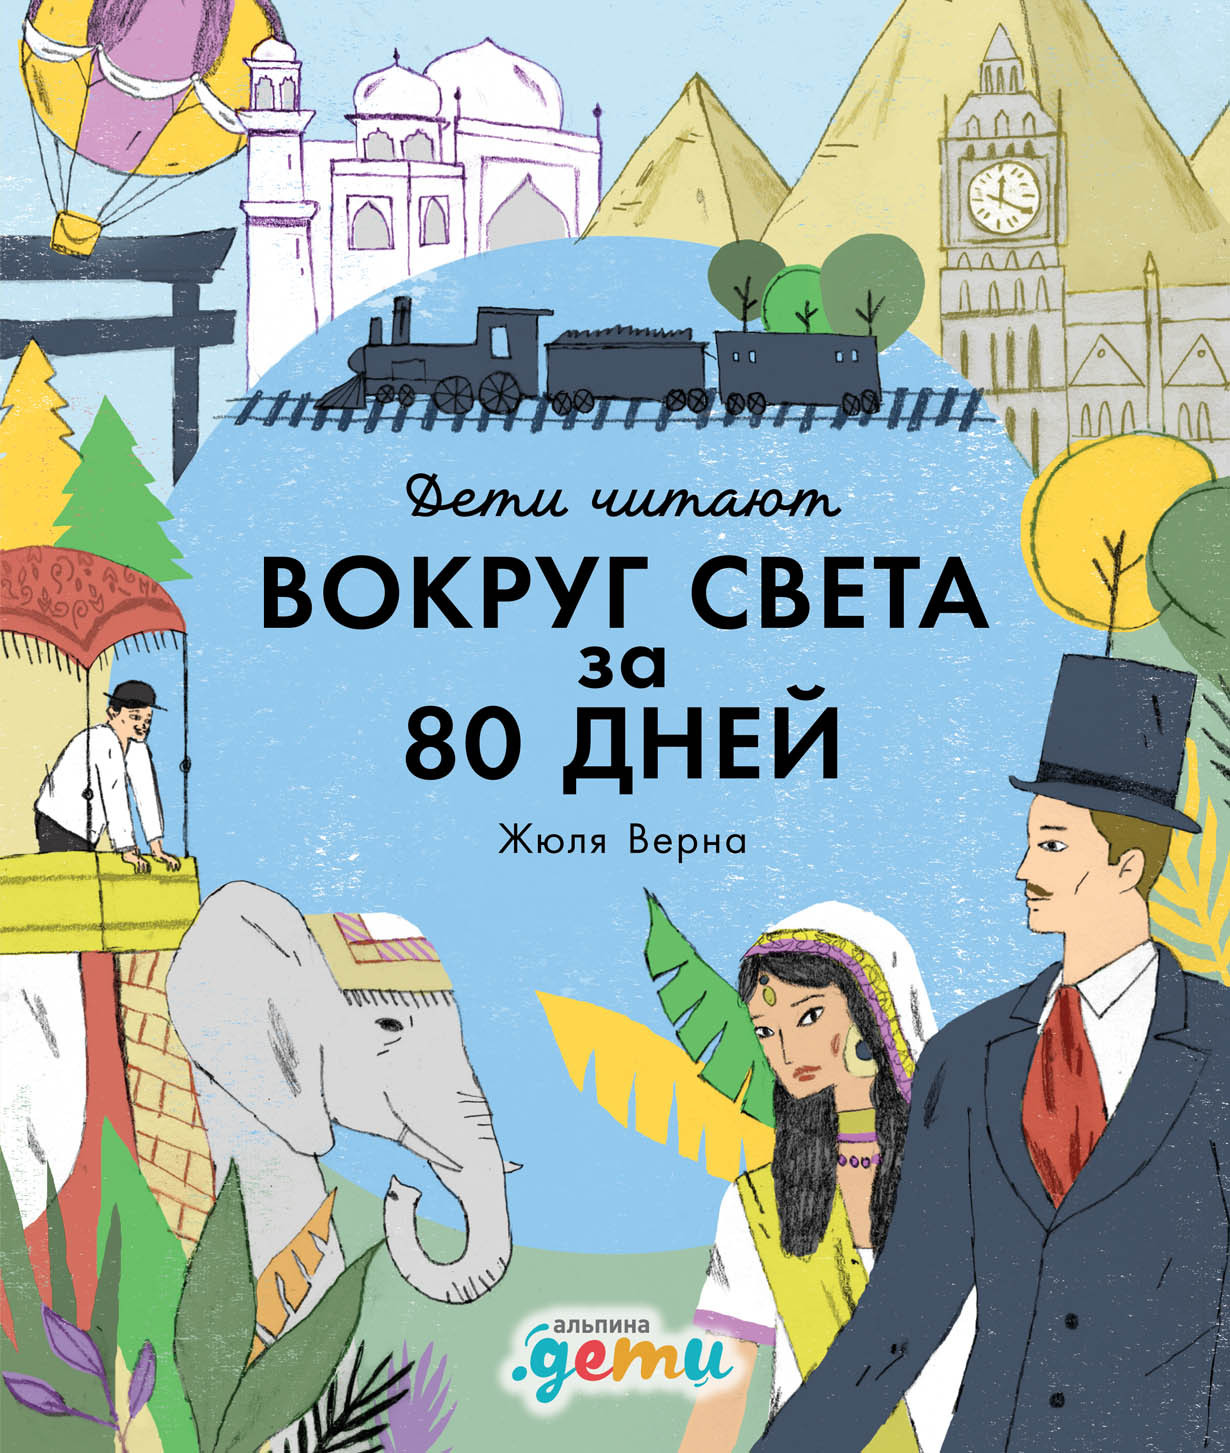 "Вокруг света за 80 дней" Жюля Верна обложка.